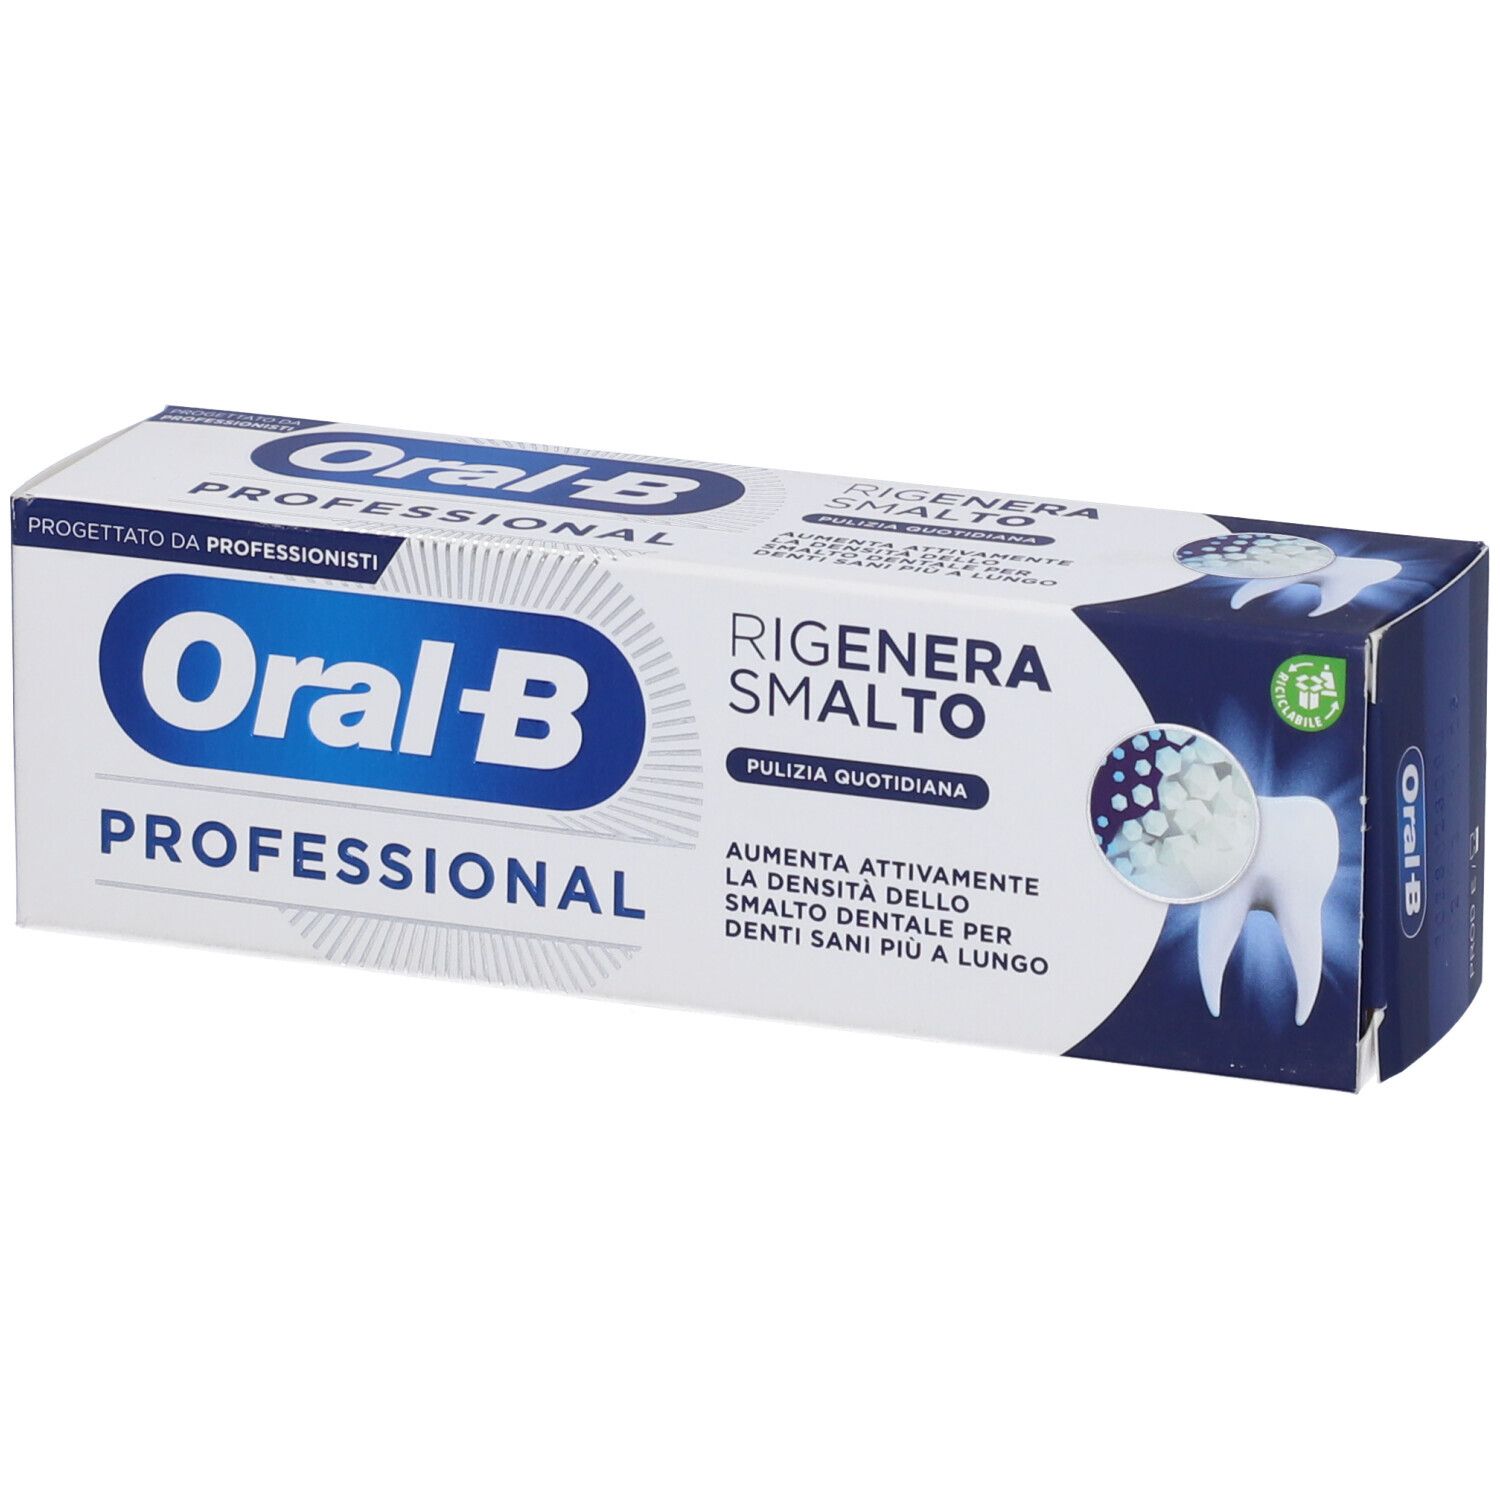 Oral-B Dentifricio Professional Rigenera Smalto Pulizia Quotidiana 75 ml